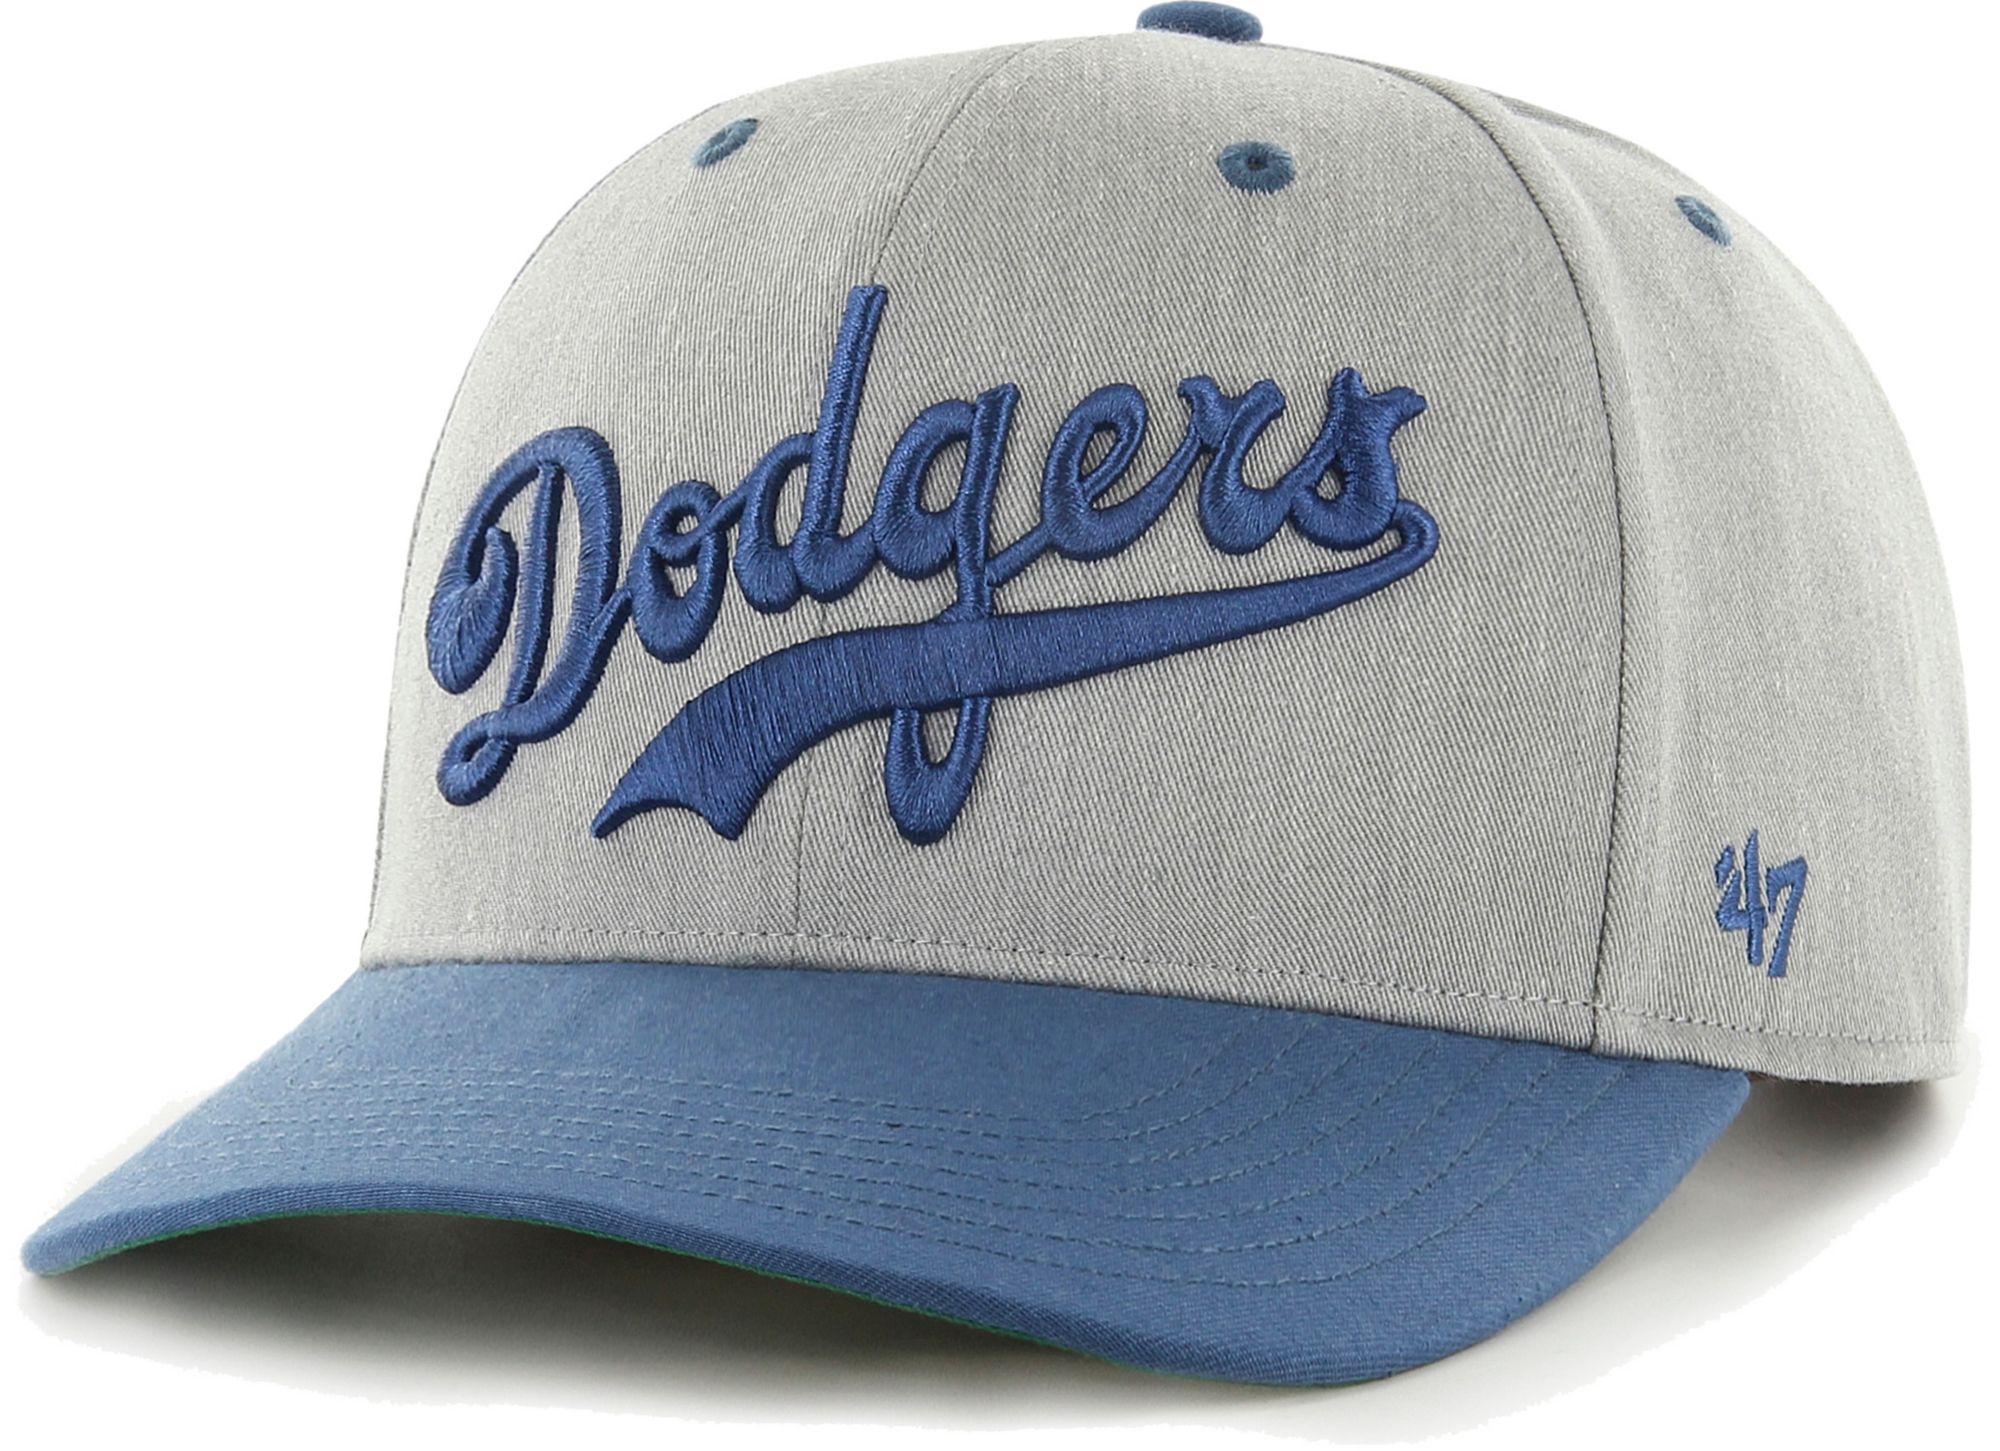 Los Angeles Dodgers Men's Gray 47 Brand Adjustable Hat